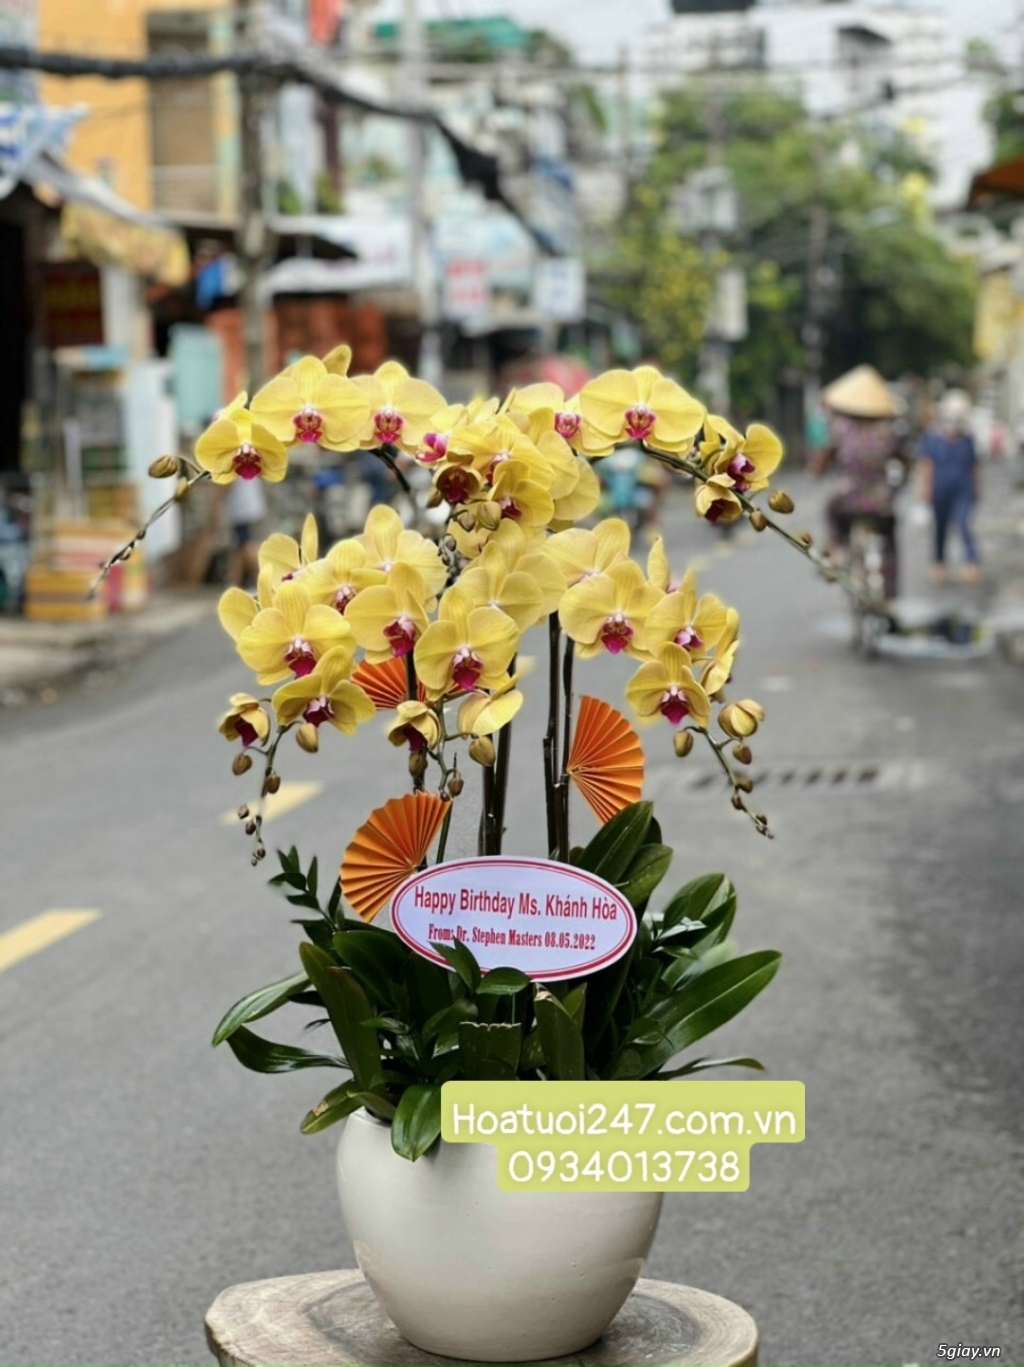 Vườn hoa tươi Lan Hồ Điệp 247 ấn tượng giữa lòng Sài Gòn - 1